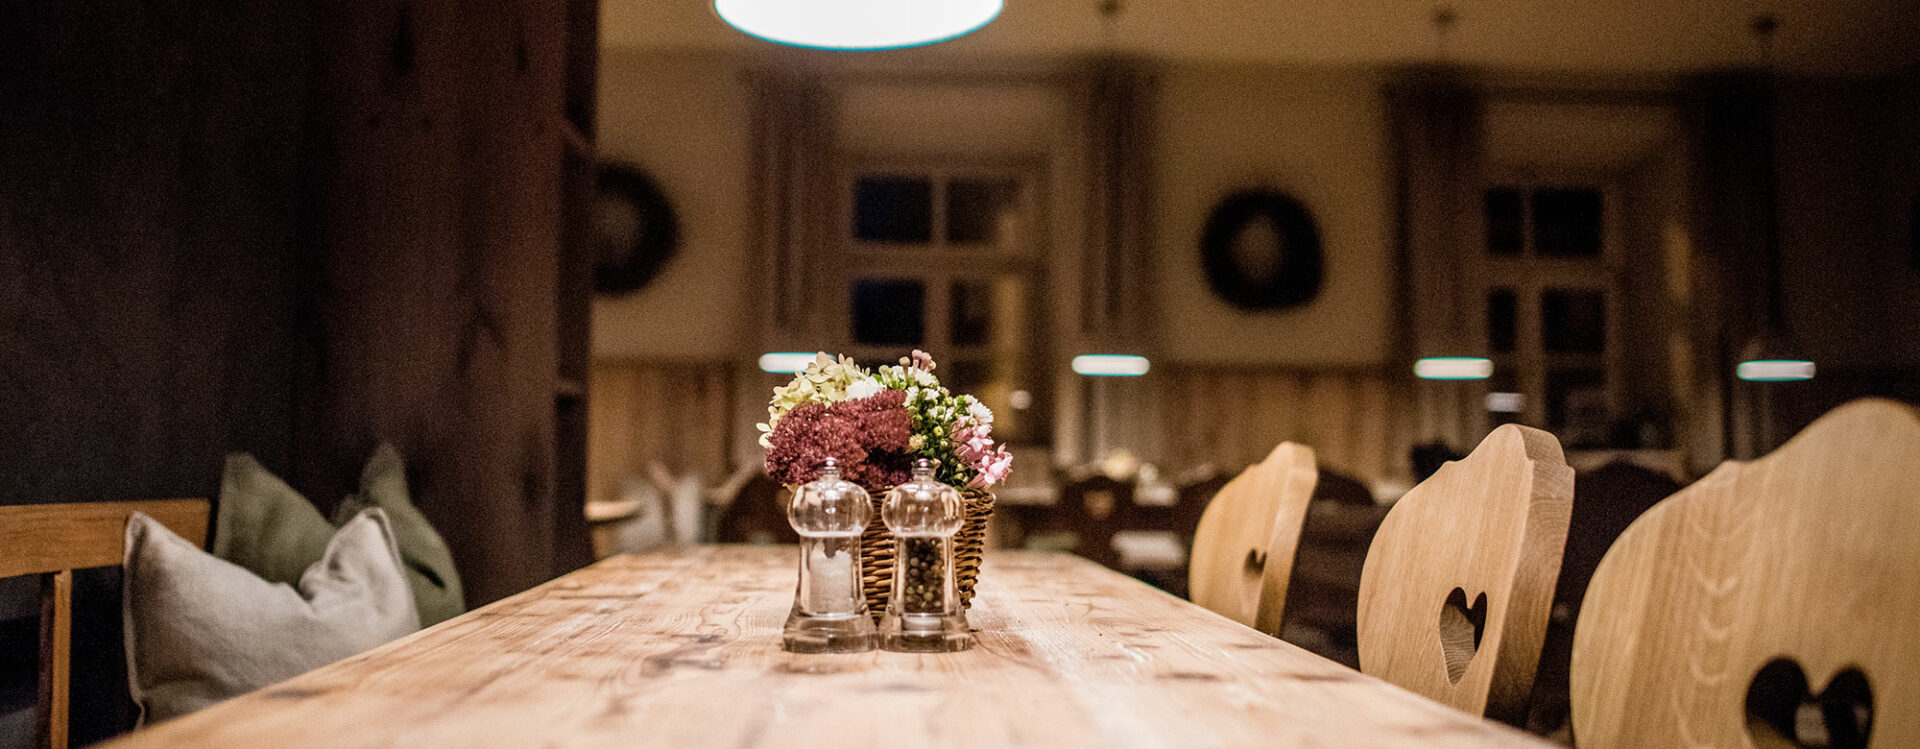 Tisch im Gastraum mit Blumendekoration